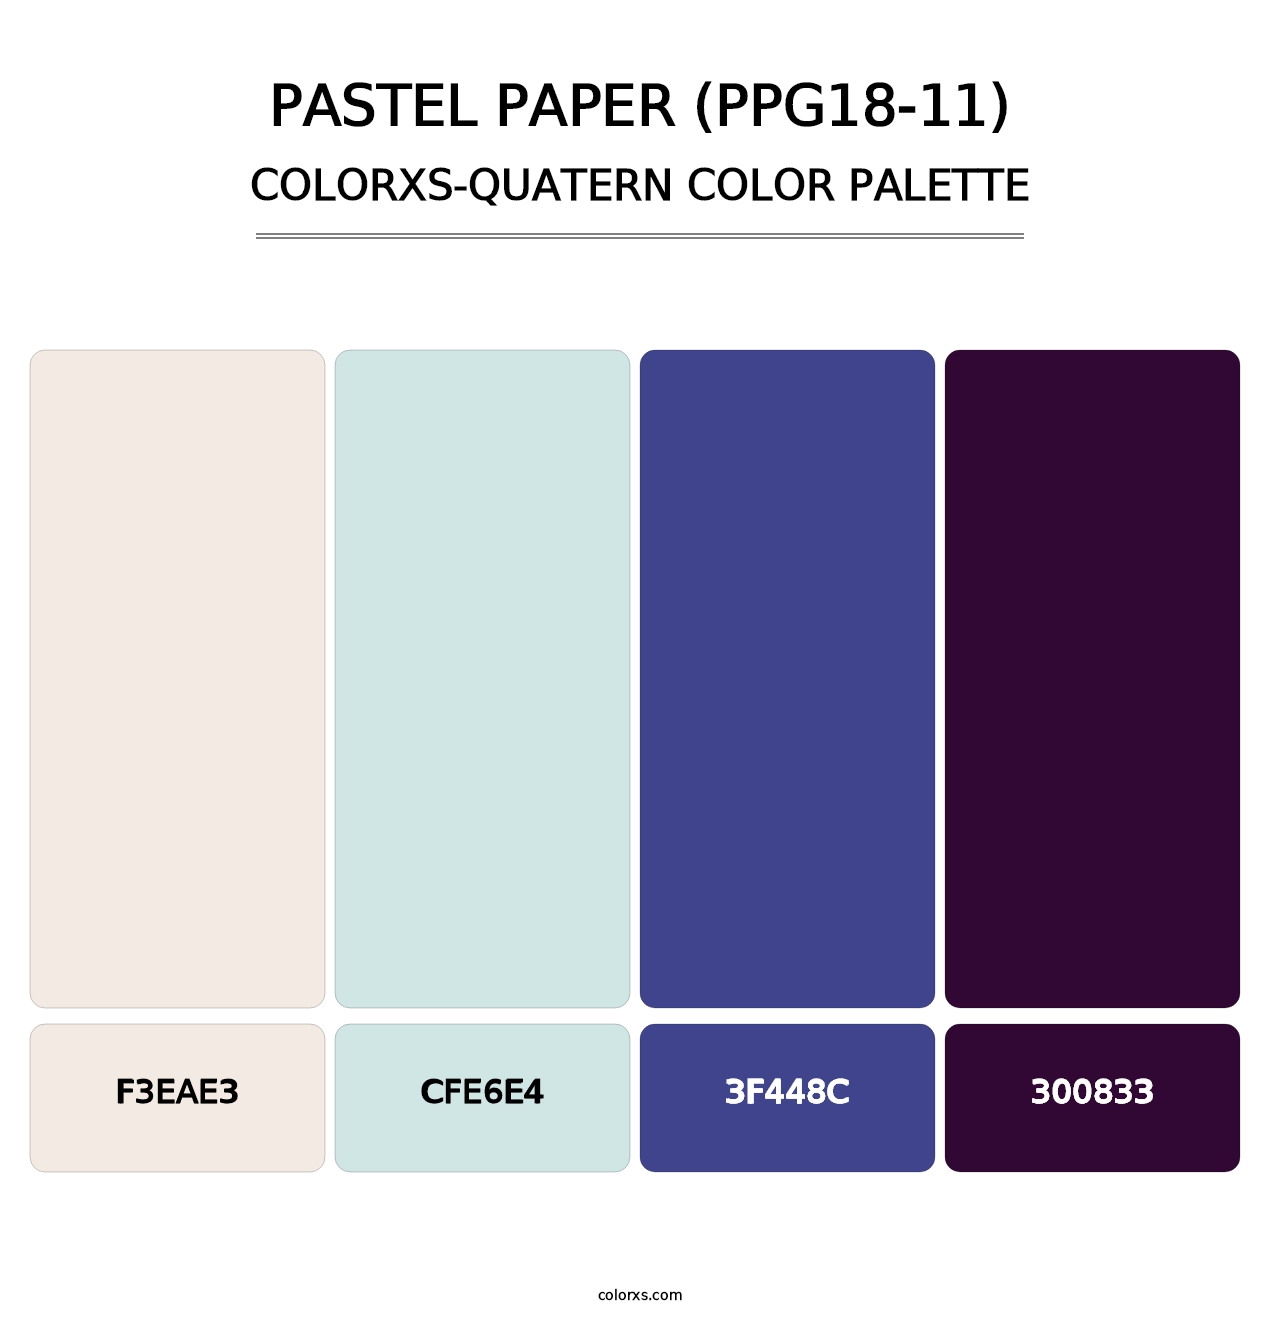 Pastel Paper (PPG18-11) - Colorxs Quatern Palette